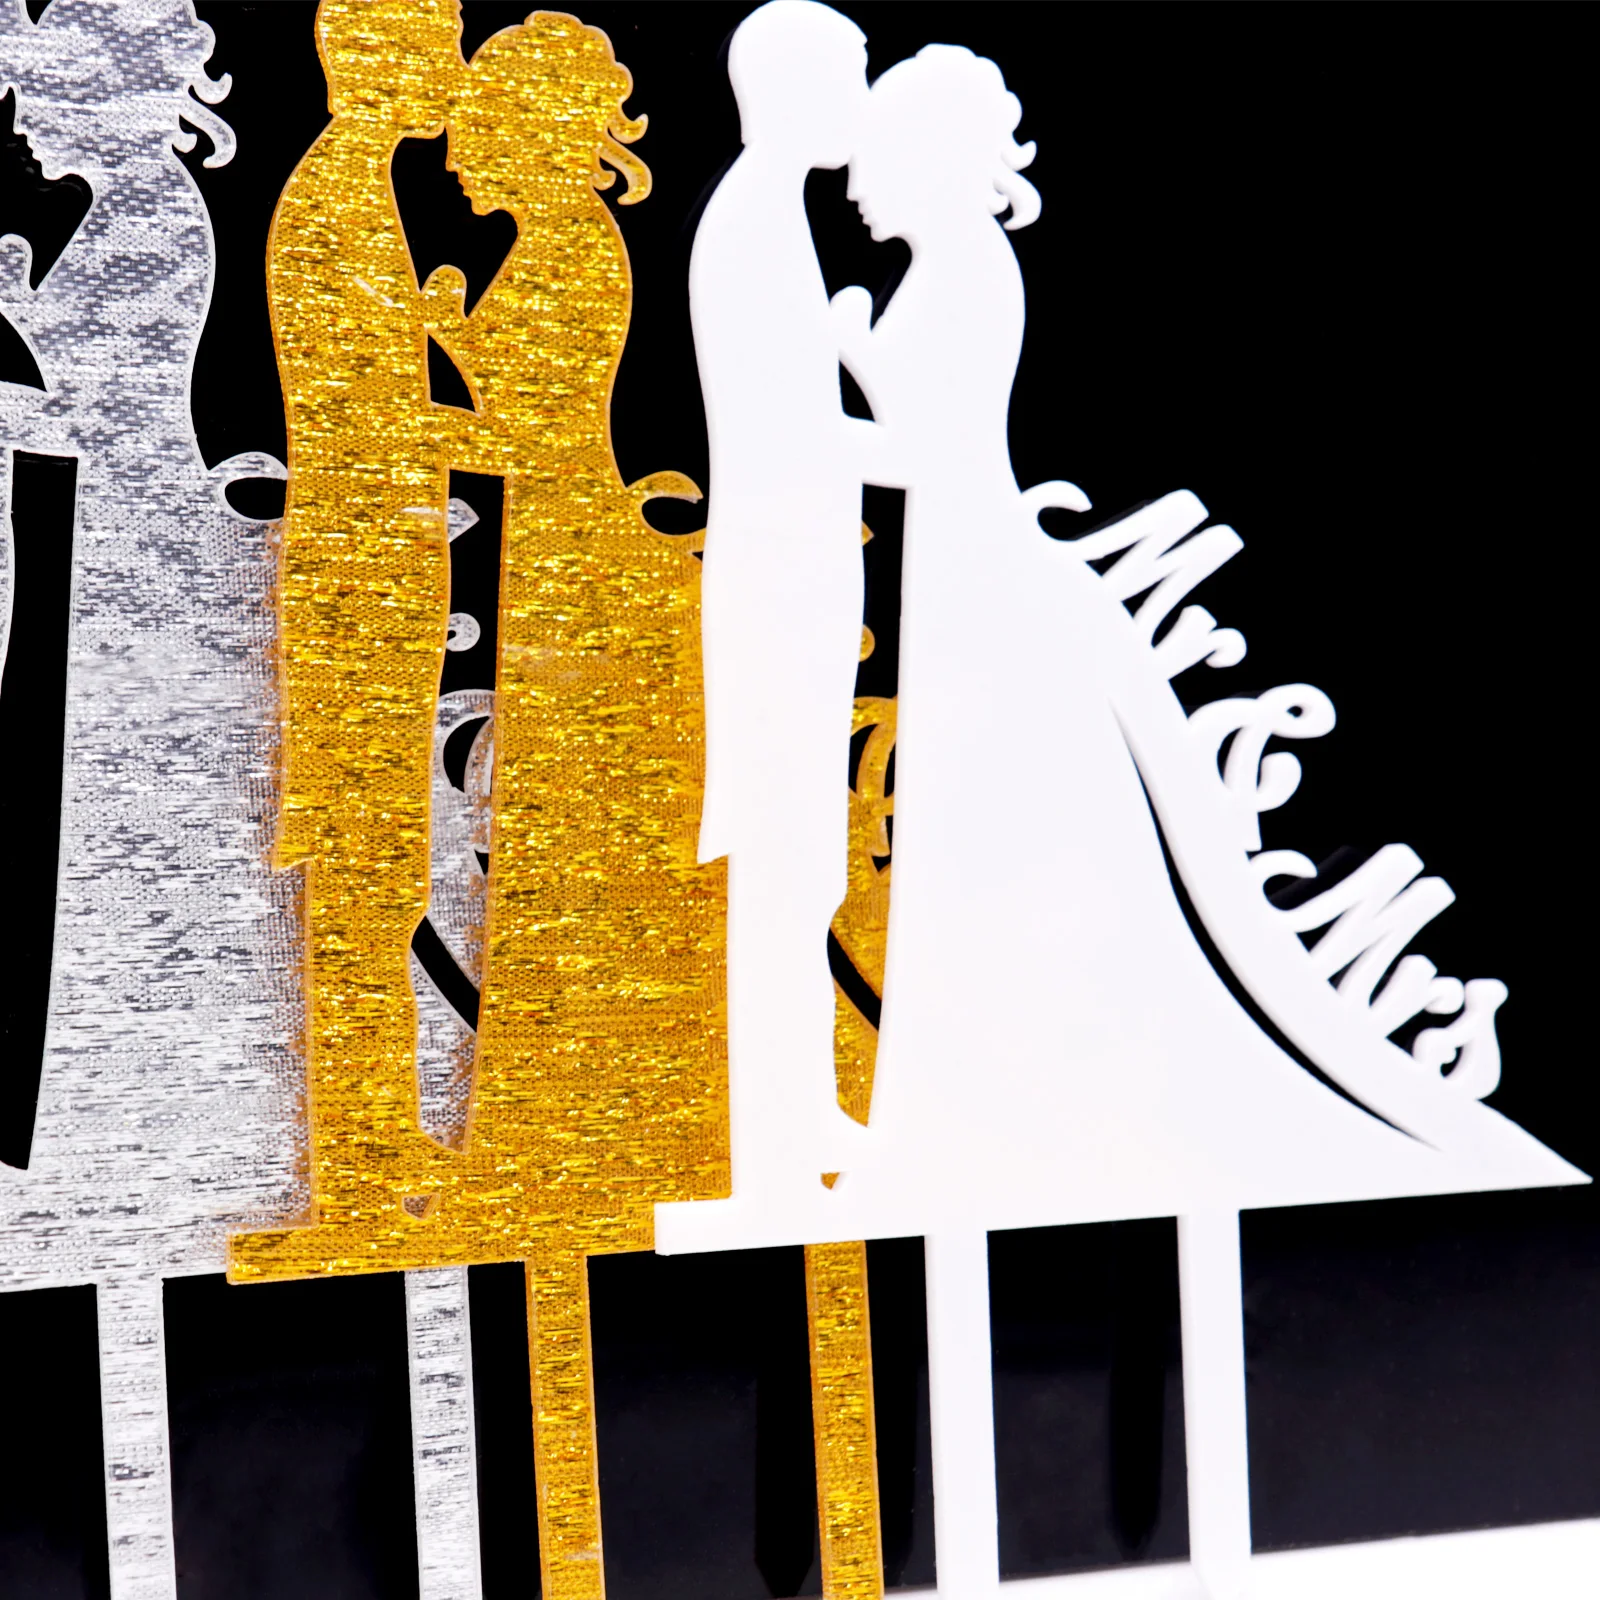 1 шт. свадебный торт Топпер Bling золото серебро Mr Mrs Вставка карты предложить свадьбу Украшение для свадебного торта вечерние Декор